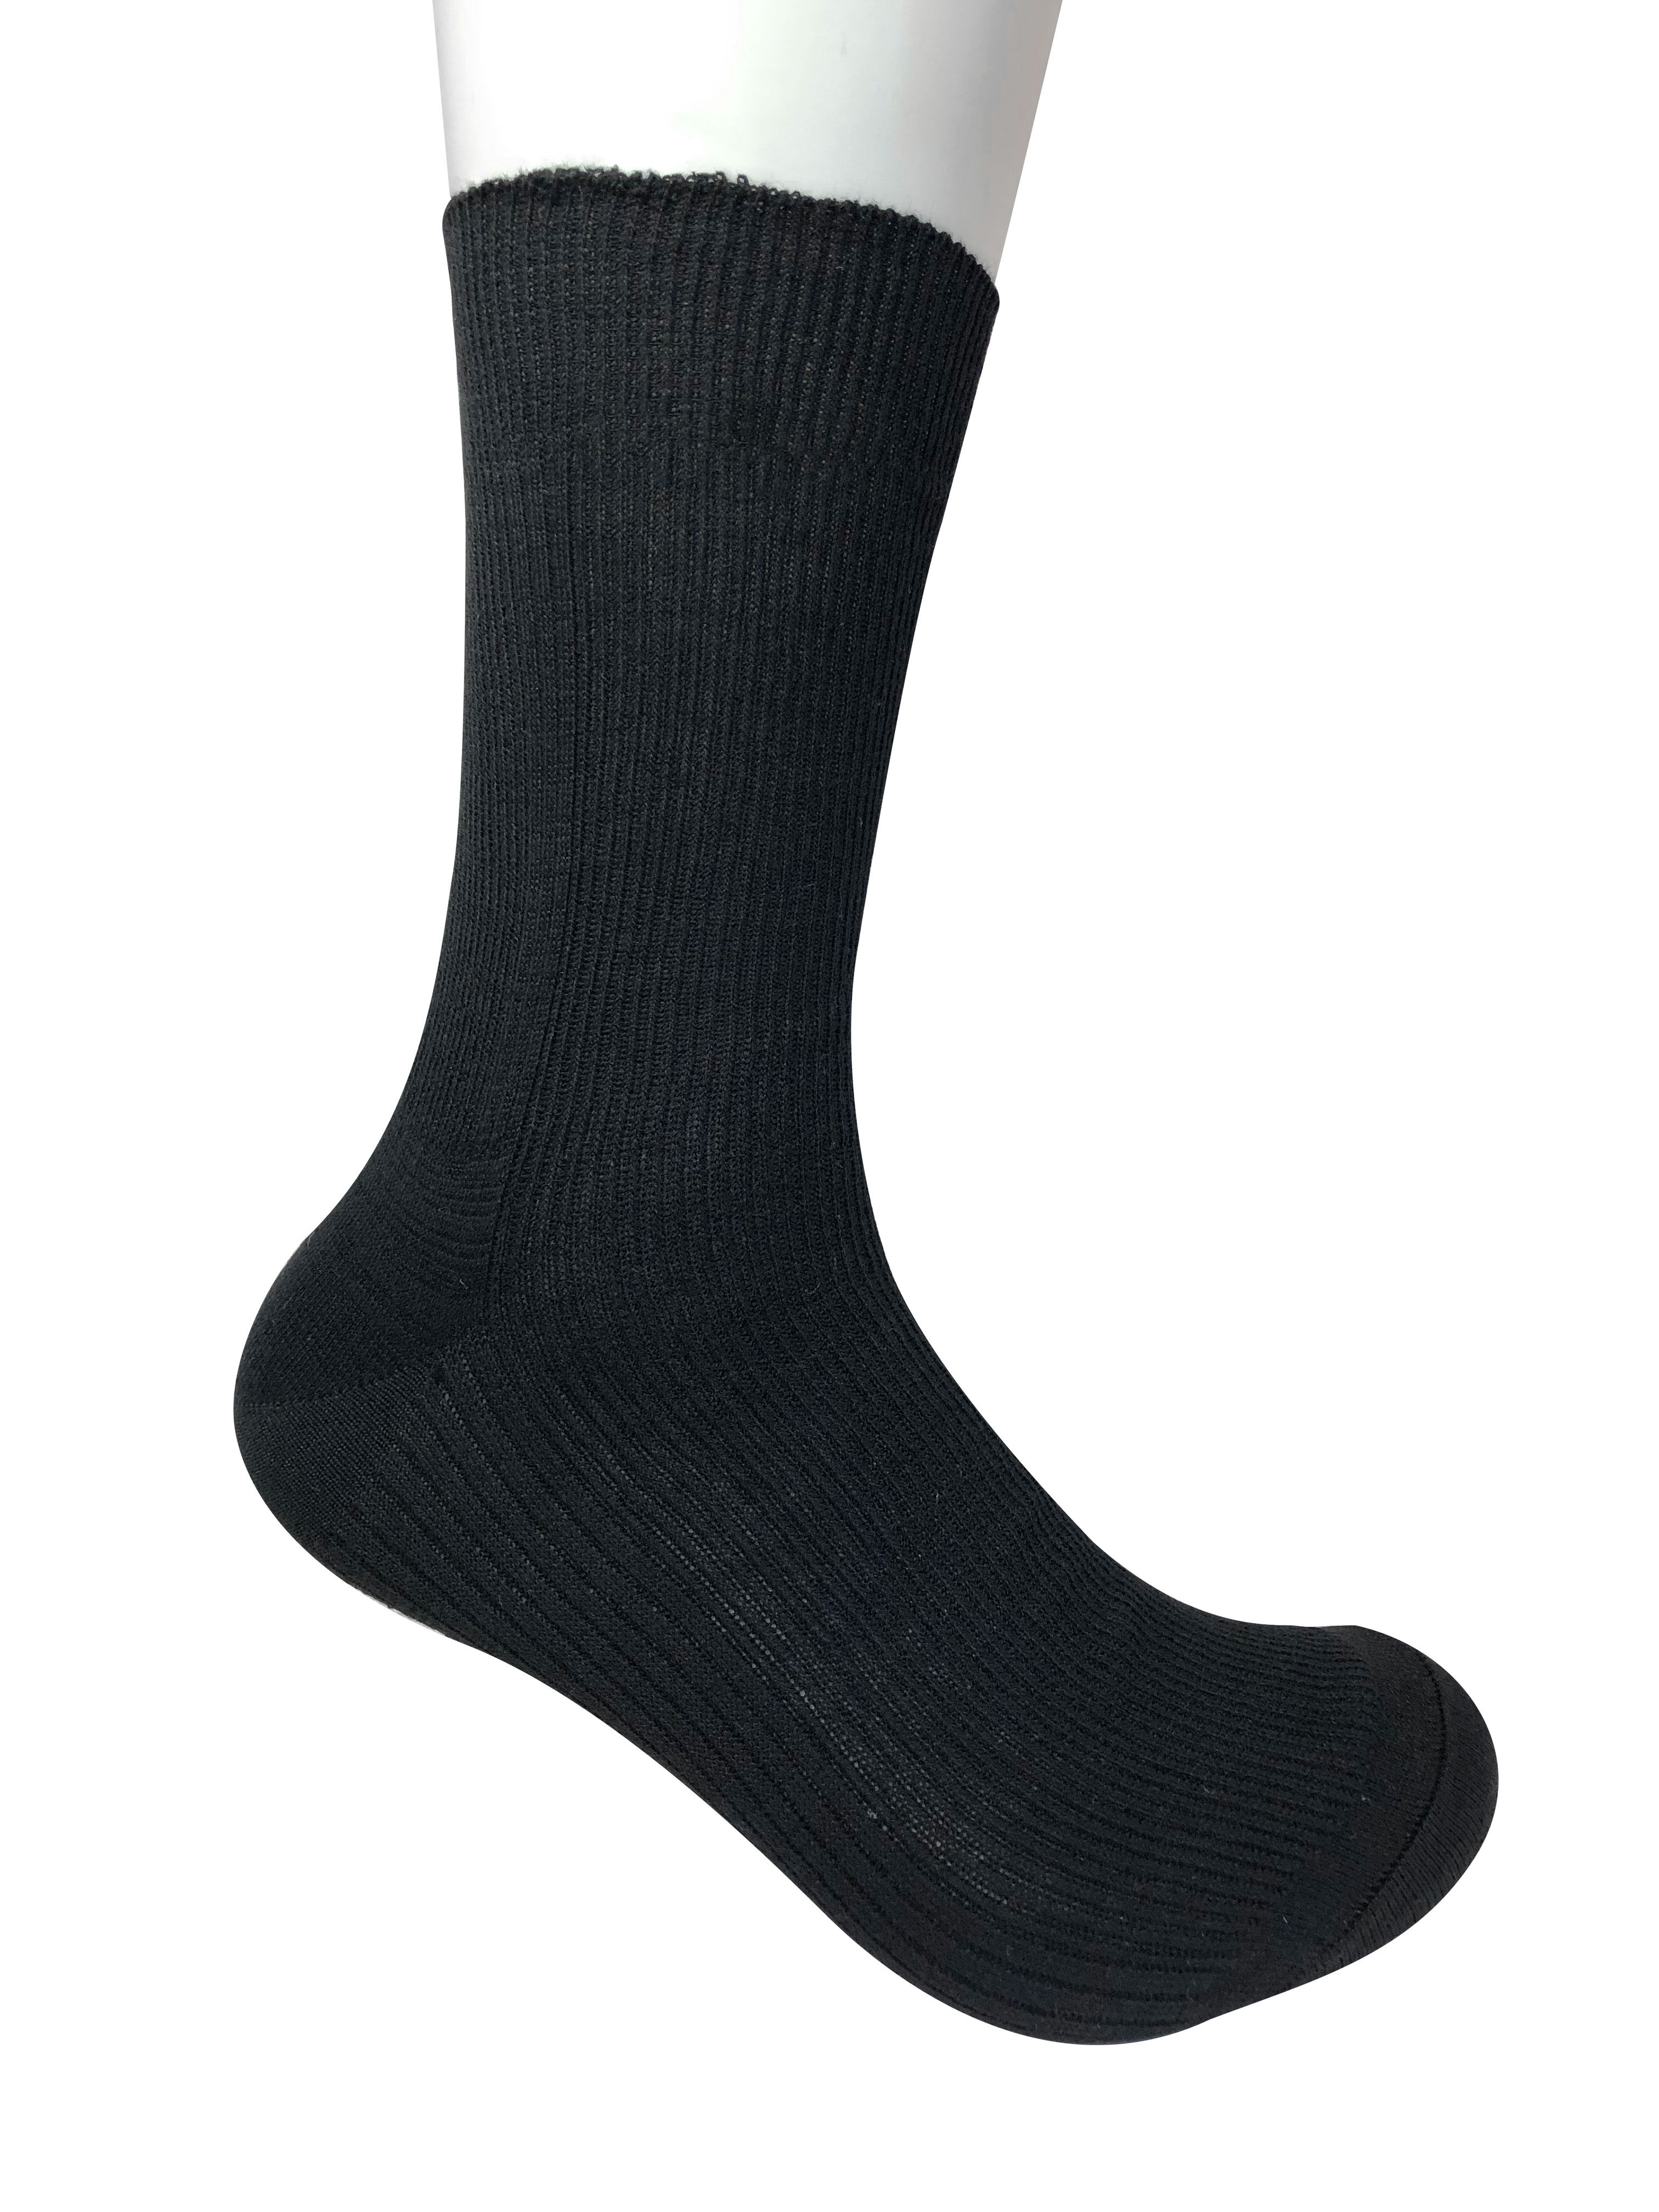 картинка Носки мужские (арт. 47) цвет: черный , серый , белый от магазина носочной фабрики "НиК"